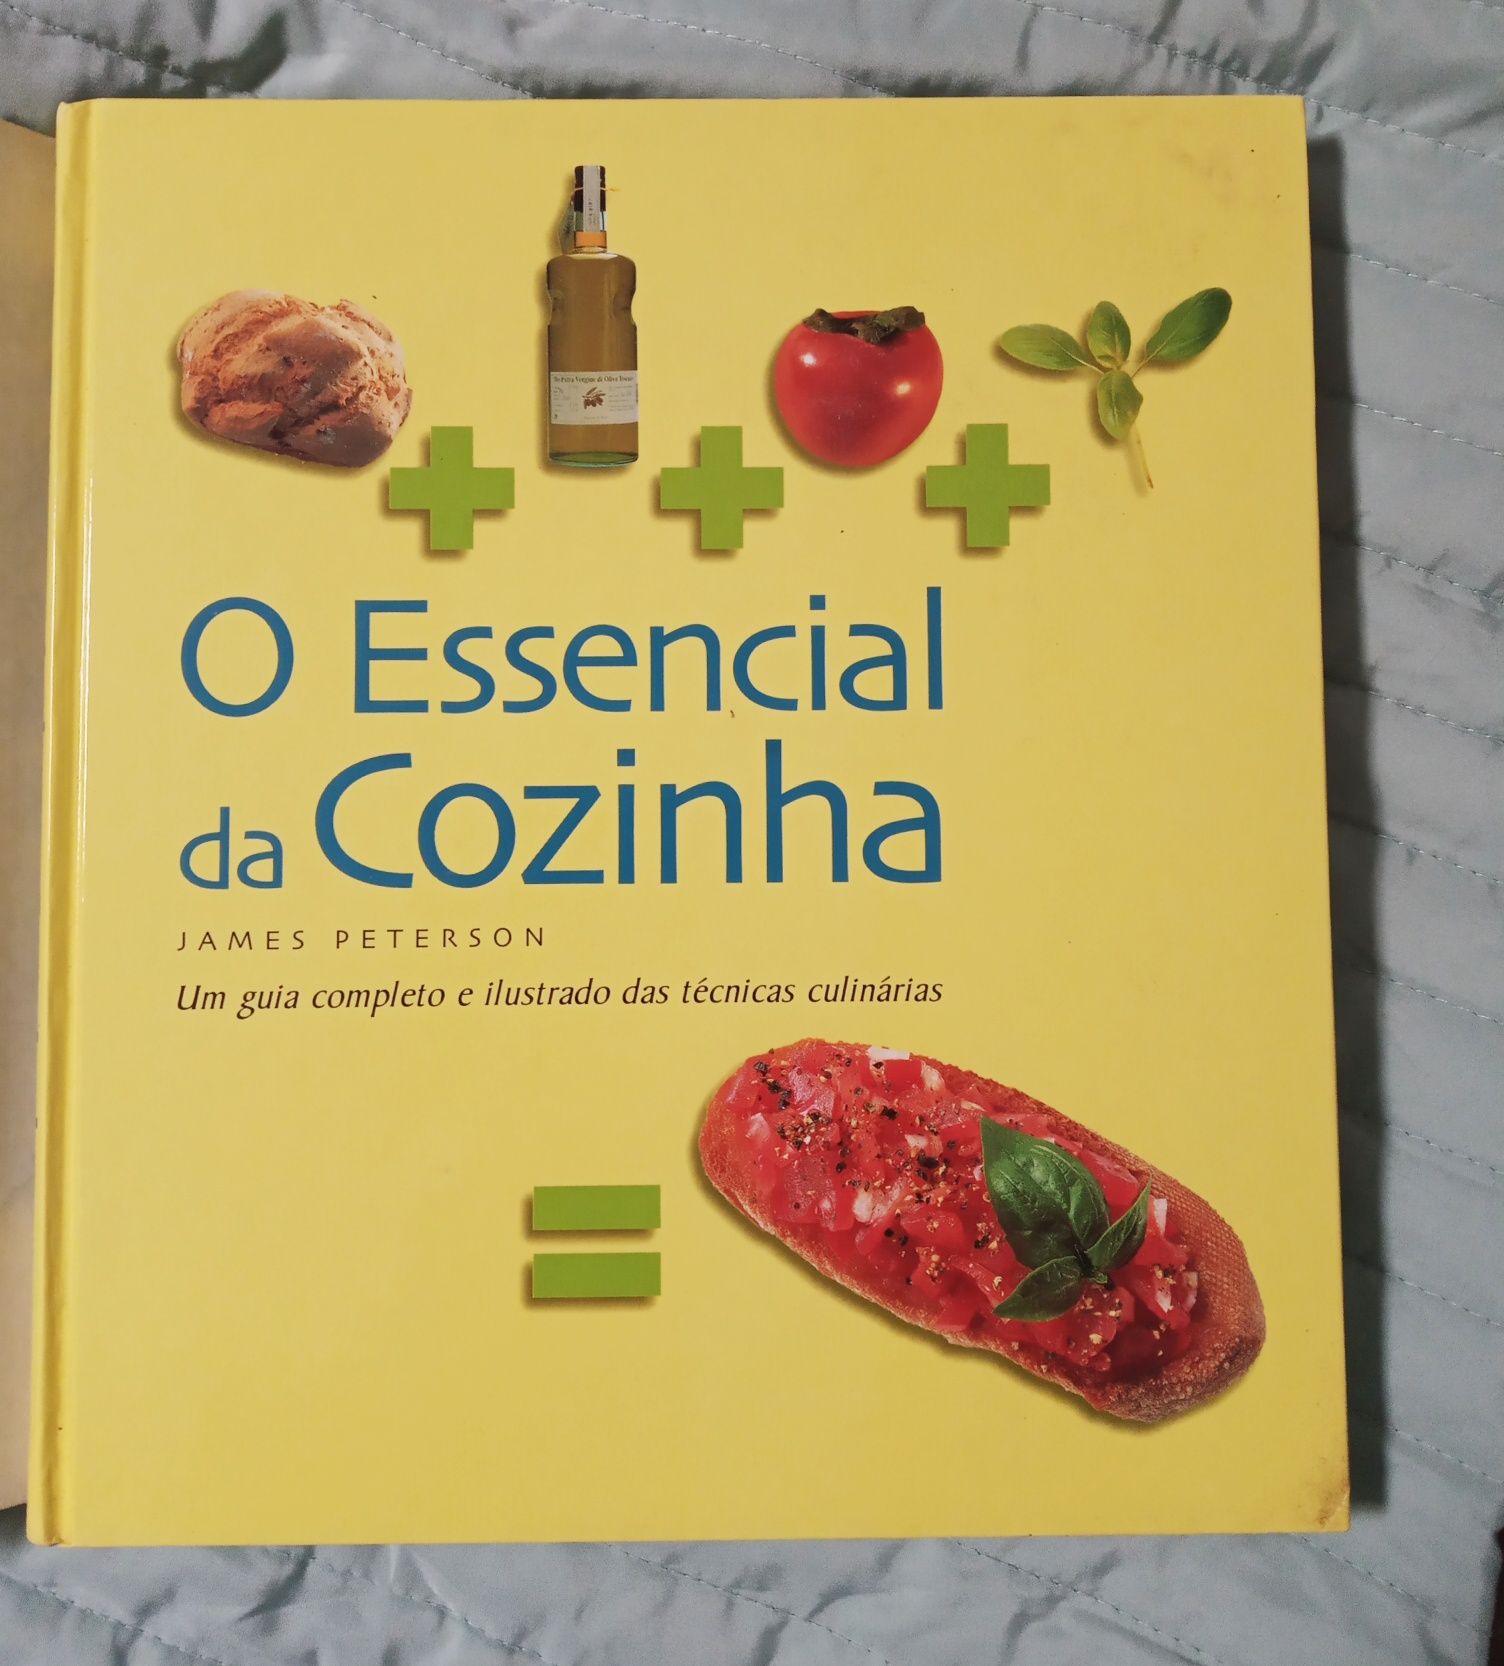 Livro "O essencial da cozinha"